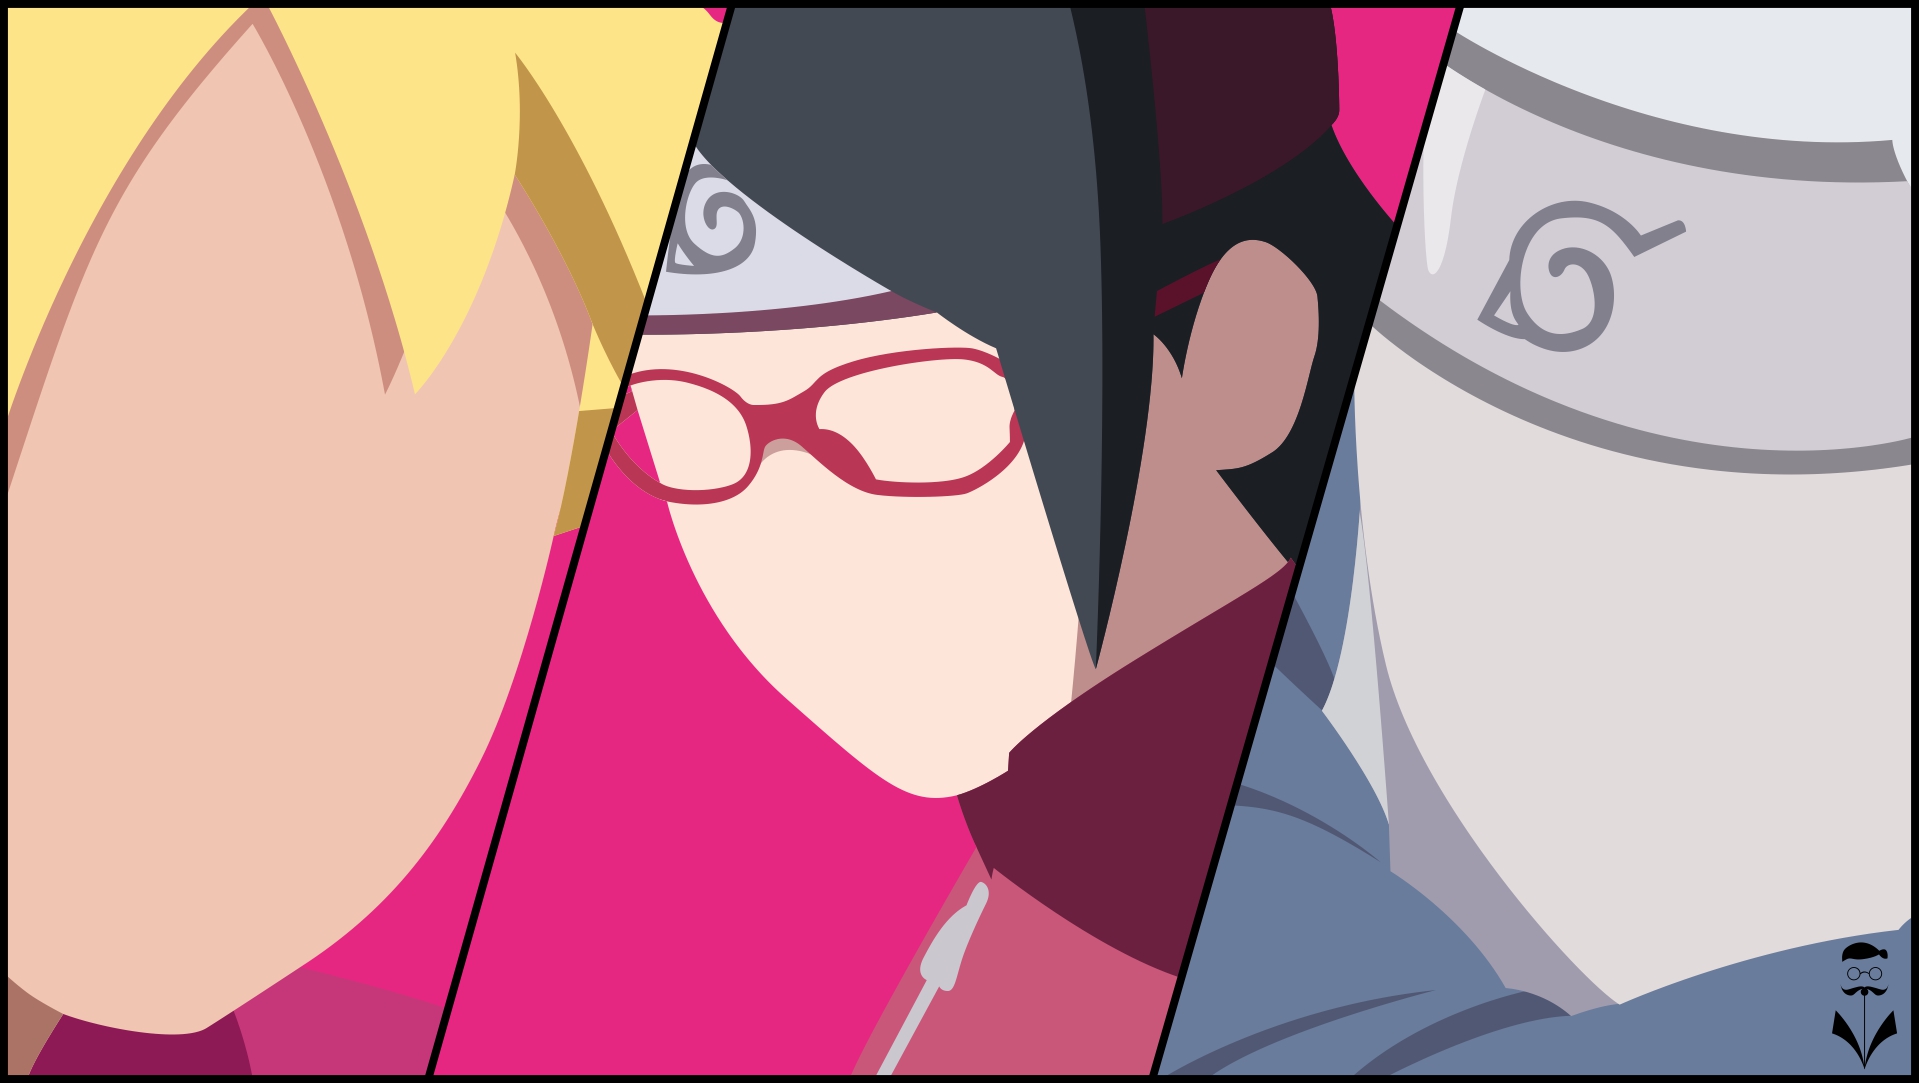 Download mobile wallpaper Anime, Naruto, Sarada Uchiha, Boruto Uzumaki, Mitsuki (Naruto), Boruto for free.